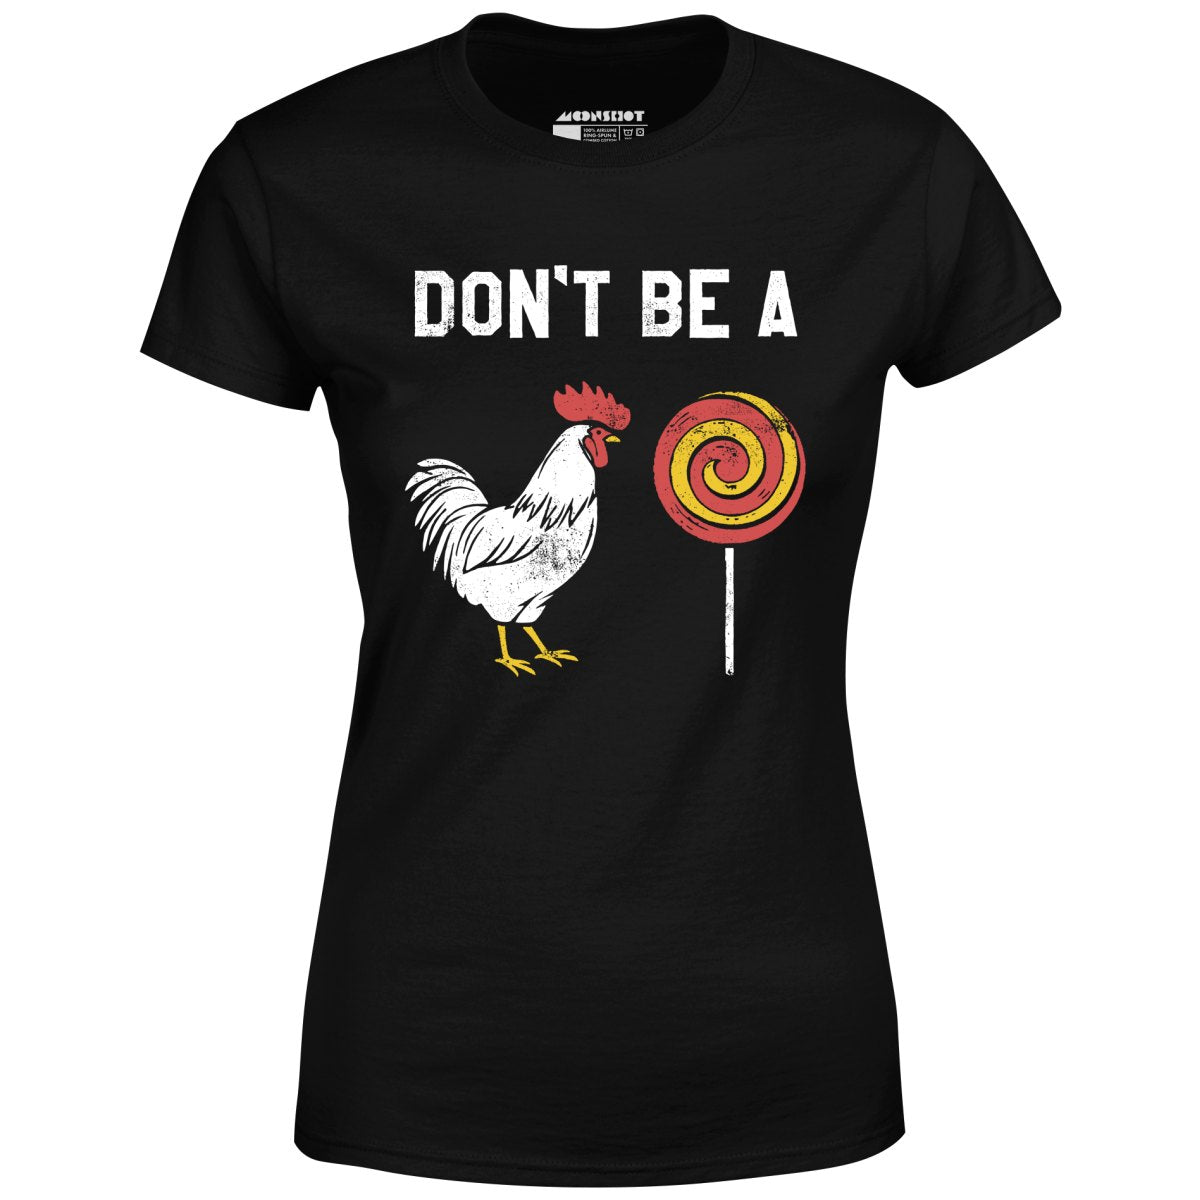 Don't Be a Cocksucker - Women's T-Shirt